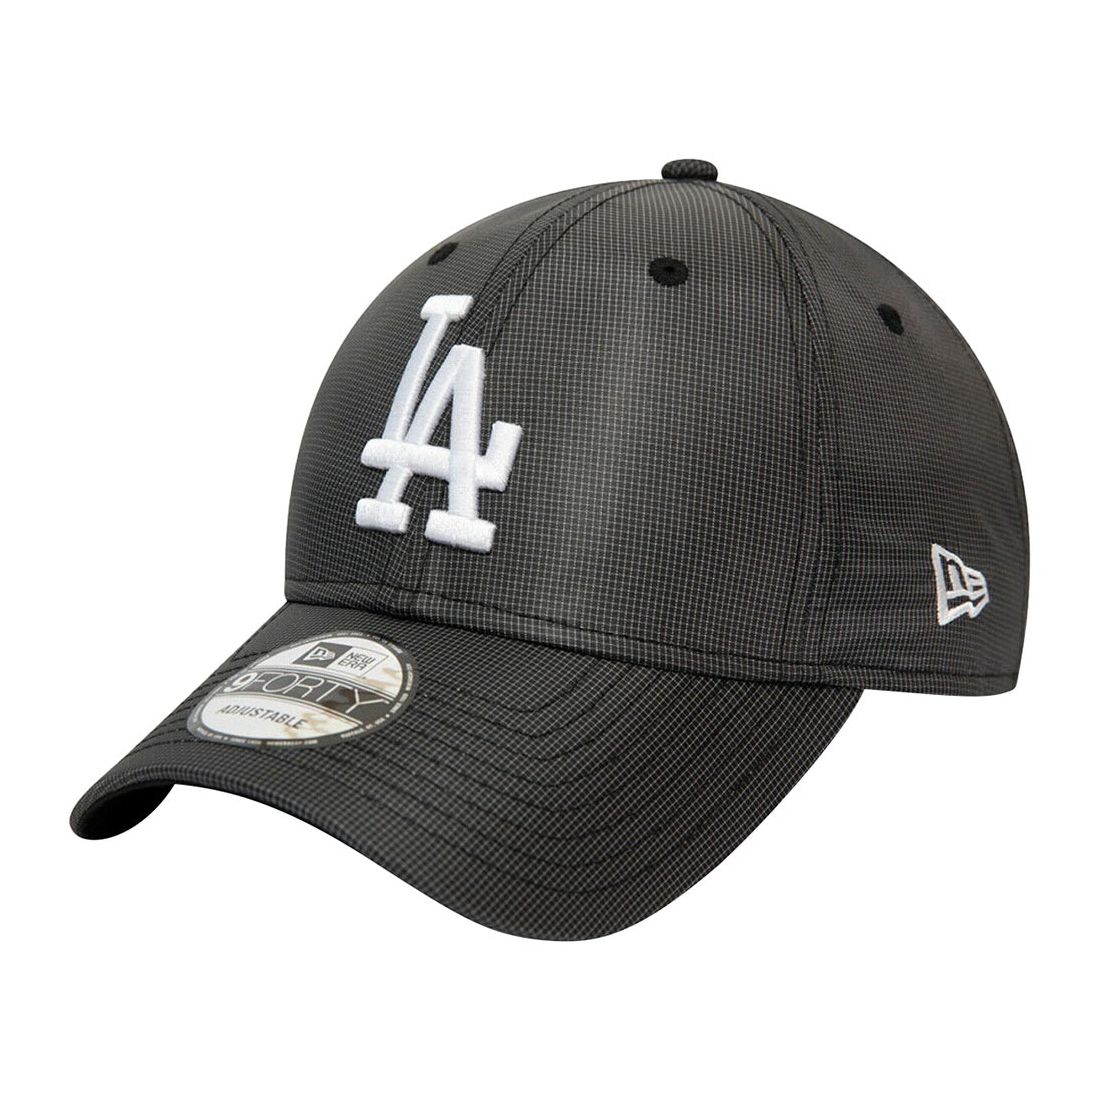 قبعة للرجال تحمل علامة فريق لوس أنجلوس دودجرز ليغ اسينشيال من قماش ريب ستوب من نيو إيرا لون كحلي